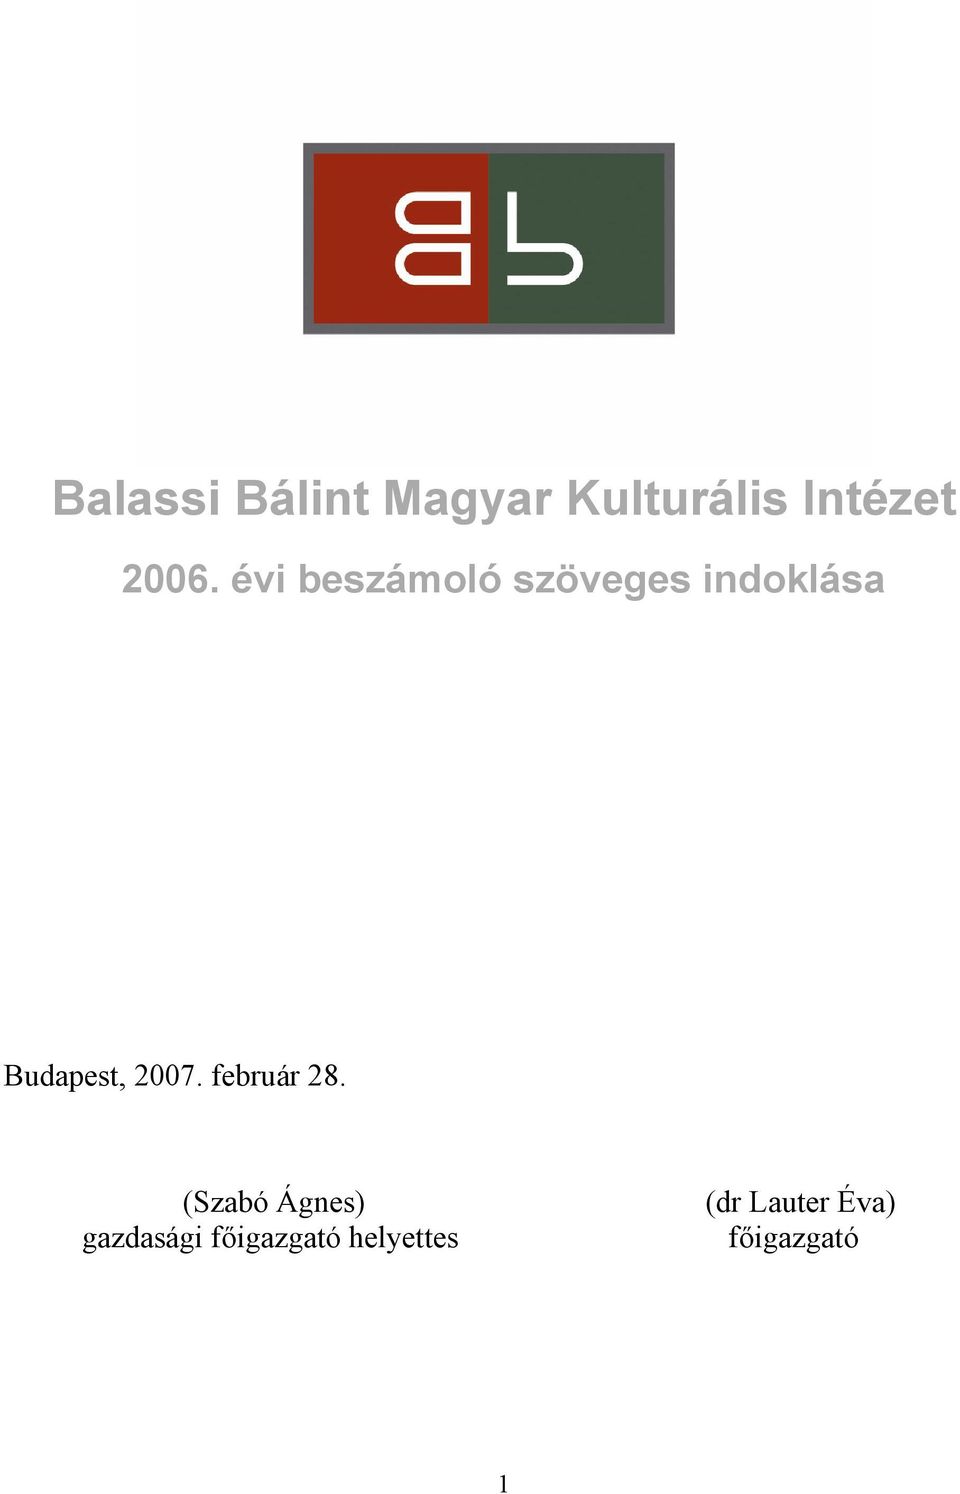 Balassi Bálint Magyar Kulturális Intézet - PDF Ingyenes letöltés